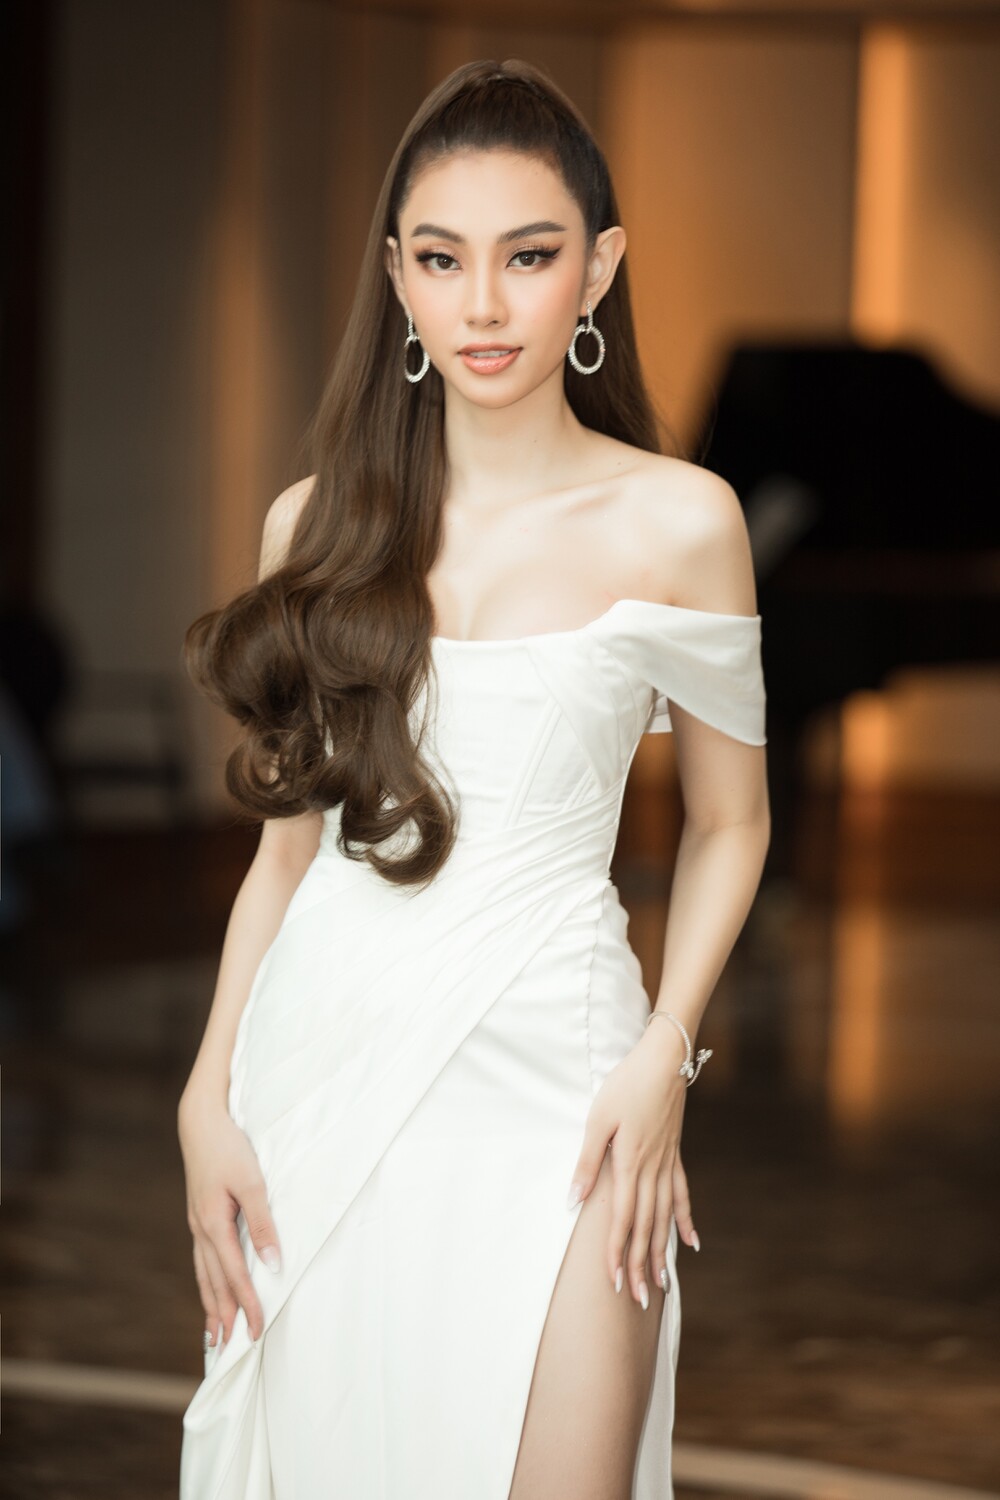 Thời trang thảm đỏ họp báo Miss World Việt Nam 2021: Lương Thùy Linh đẹp tựa thiên nga, Kiểu Loan lột xác khoe vòng 1 ngồn ngột - Ảnh 9